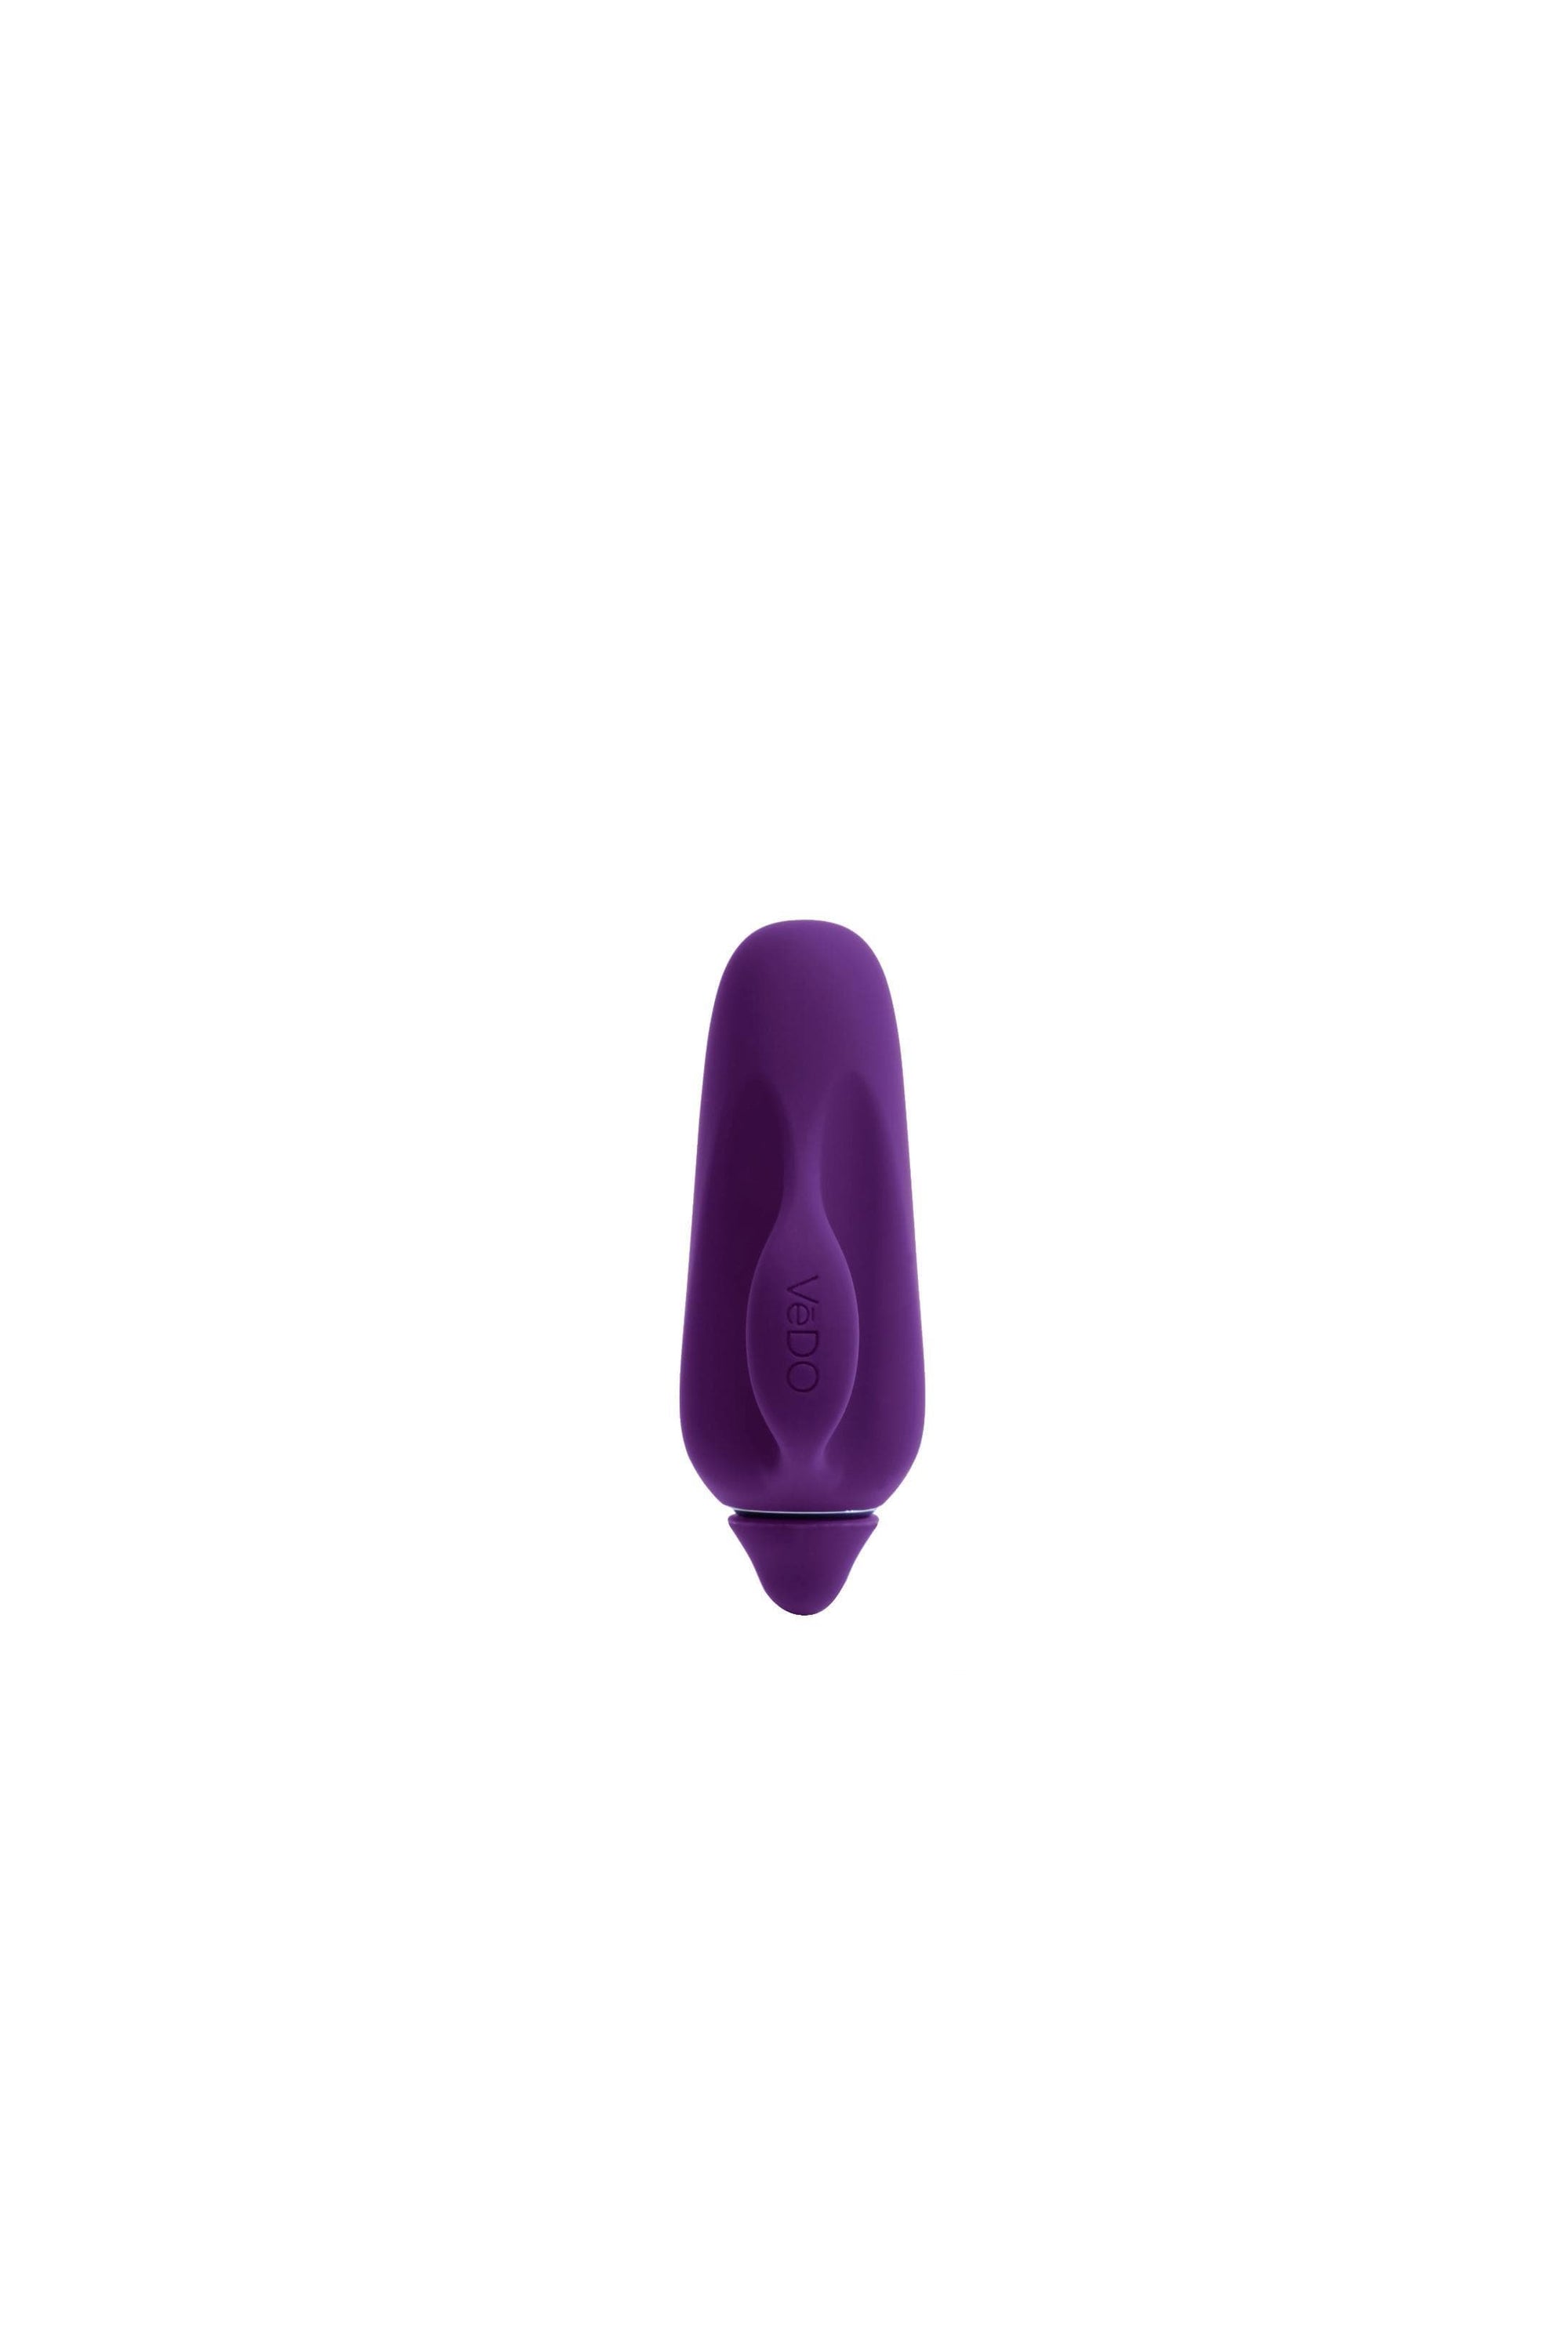 vivi rechargeable finger vibe purple